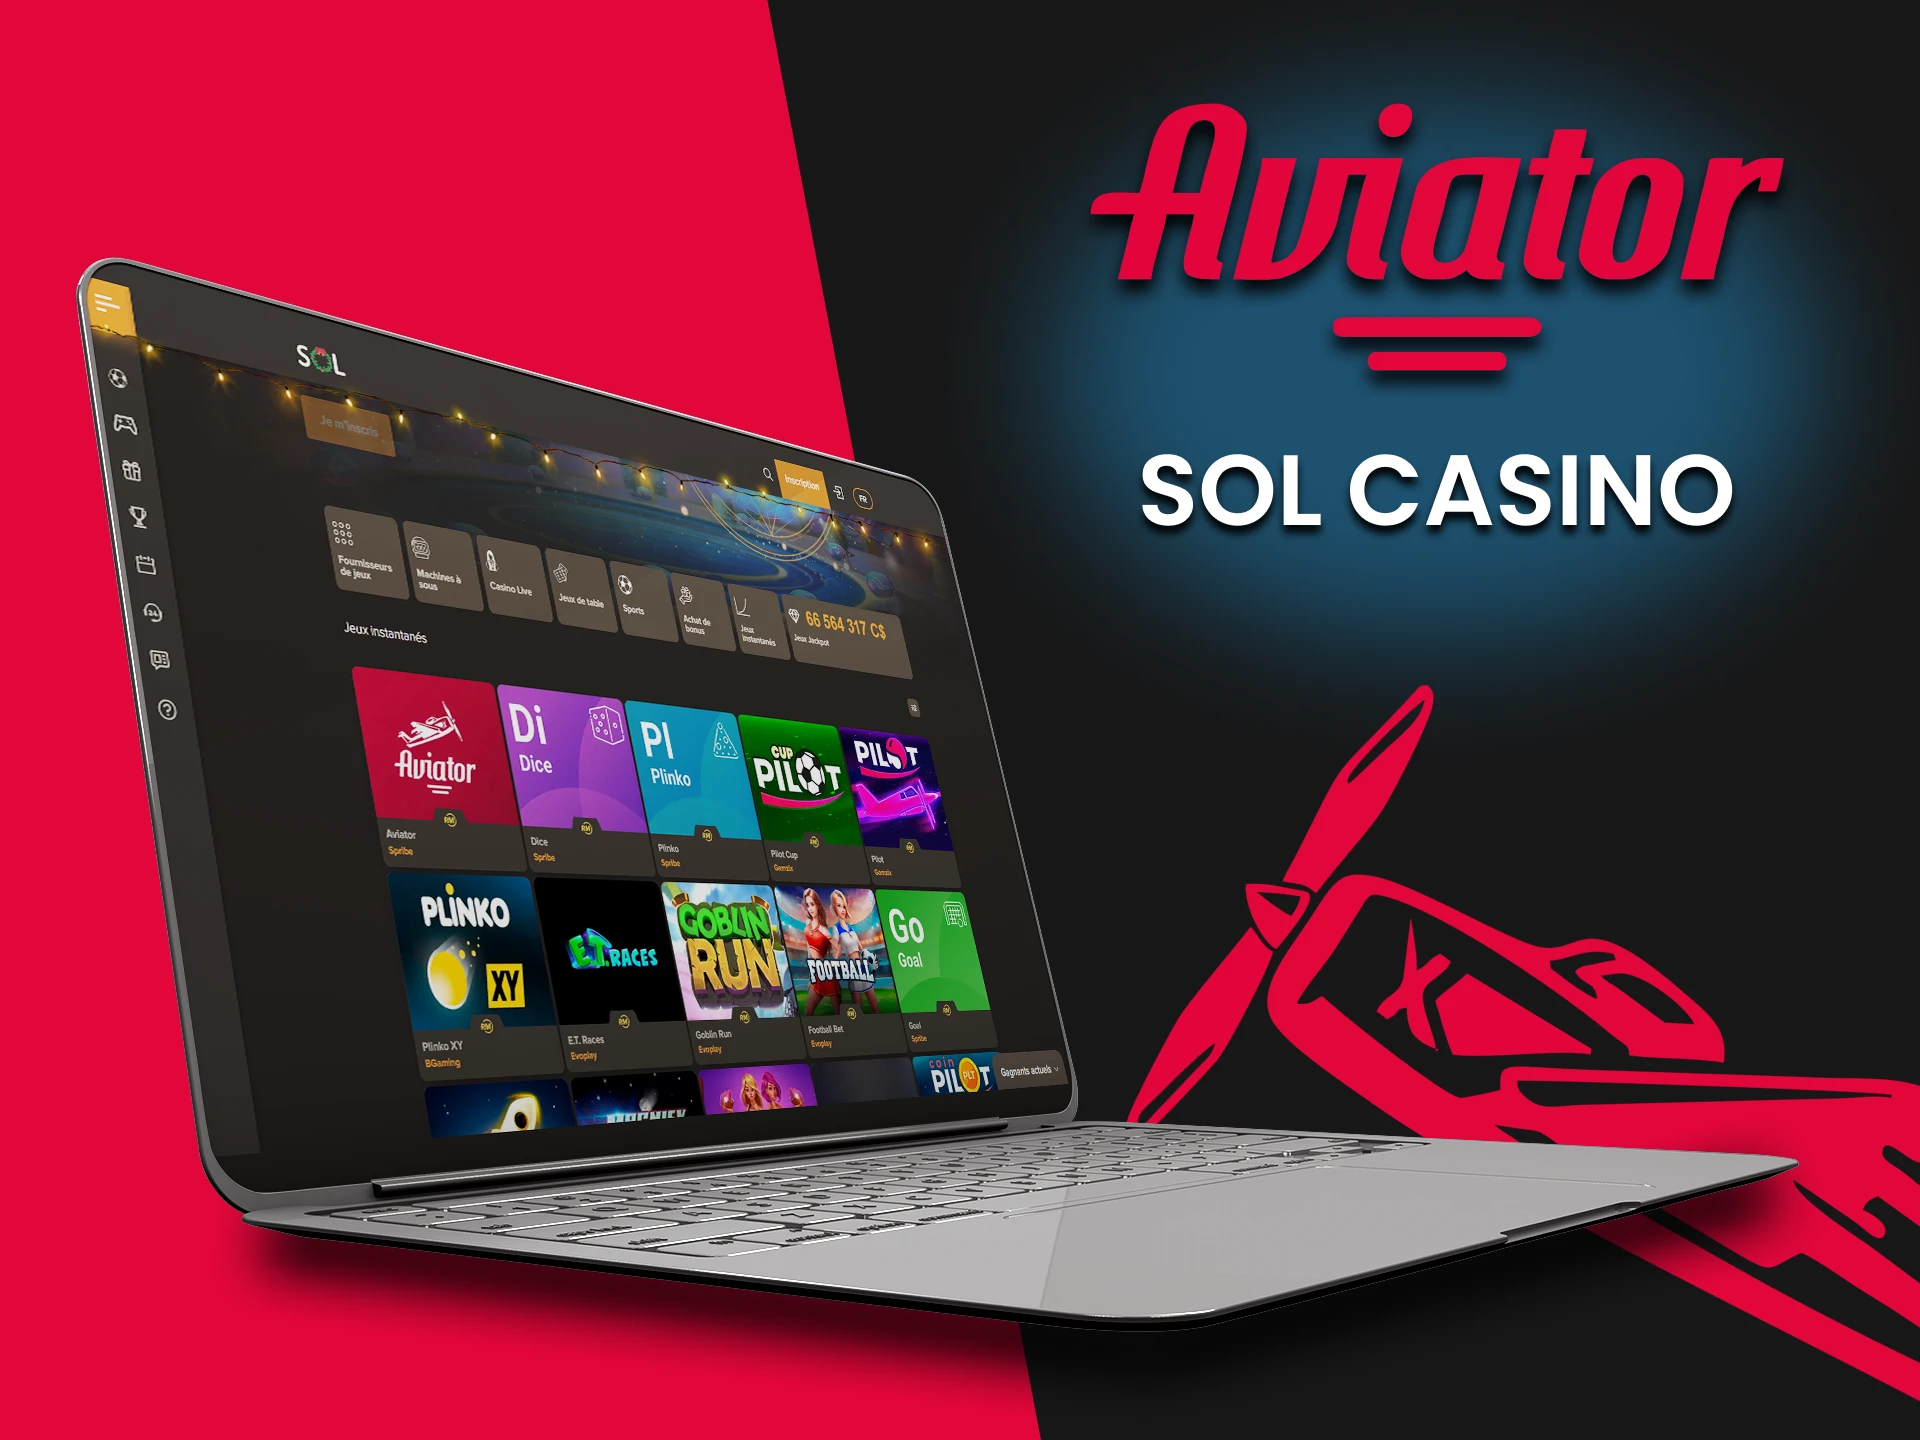 Pour jouer à Aviator, choisissez le casino SOL.